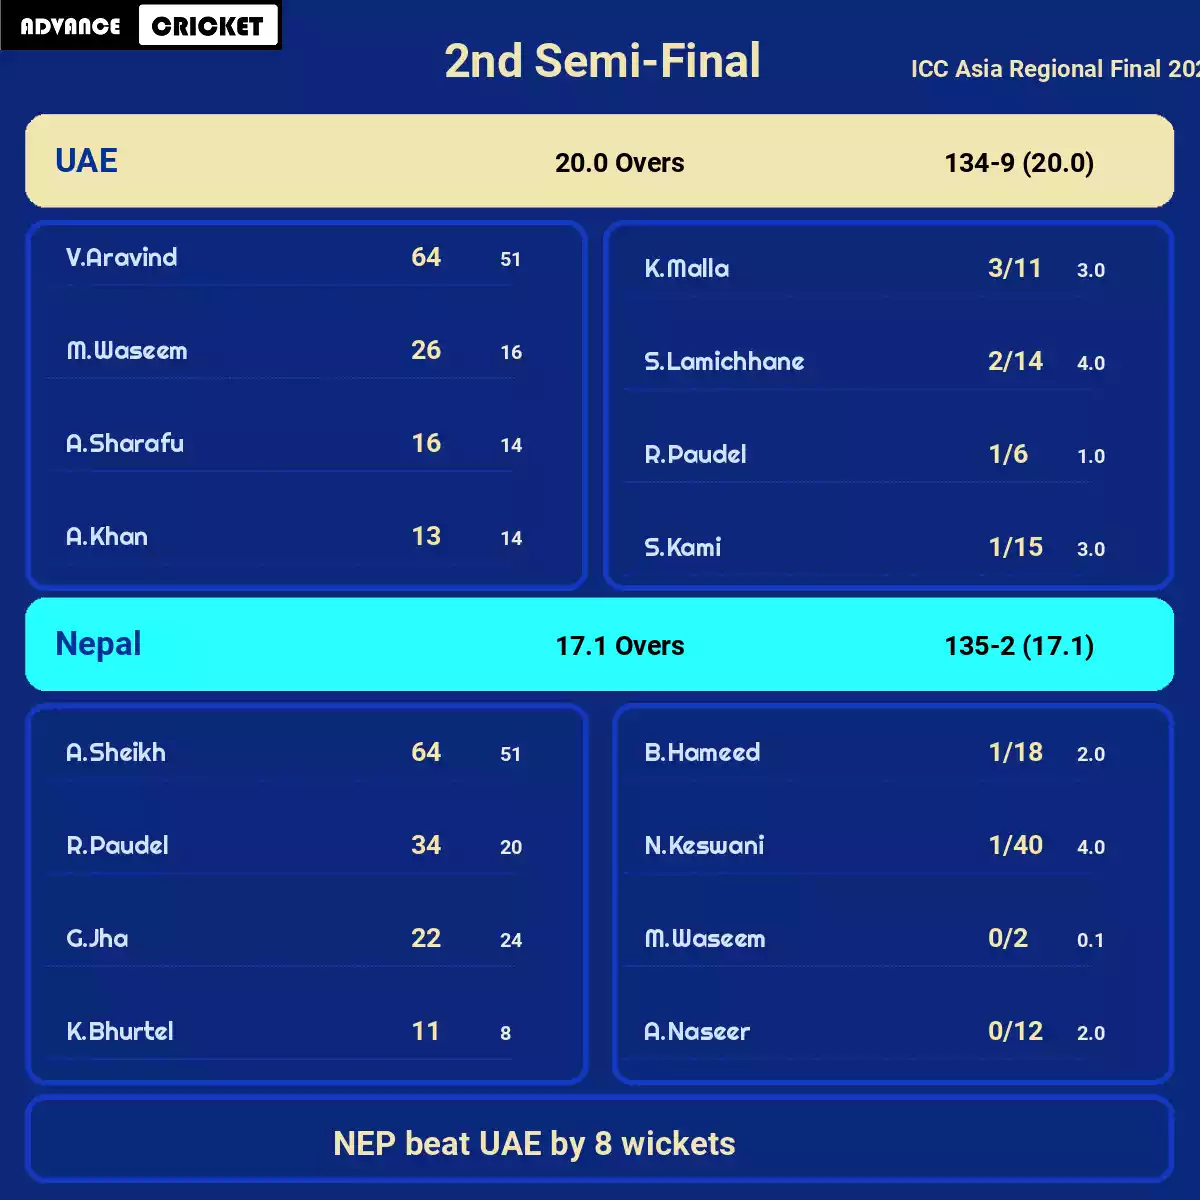 UAE vs NEP 2nd Semi-Final ICC Asia Regional Final 2023